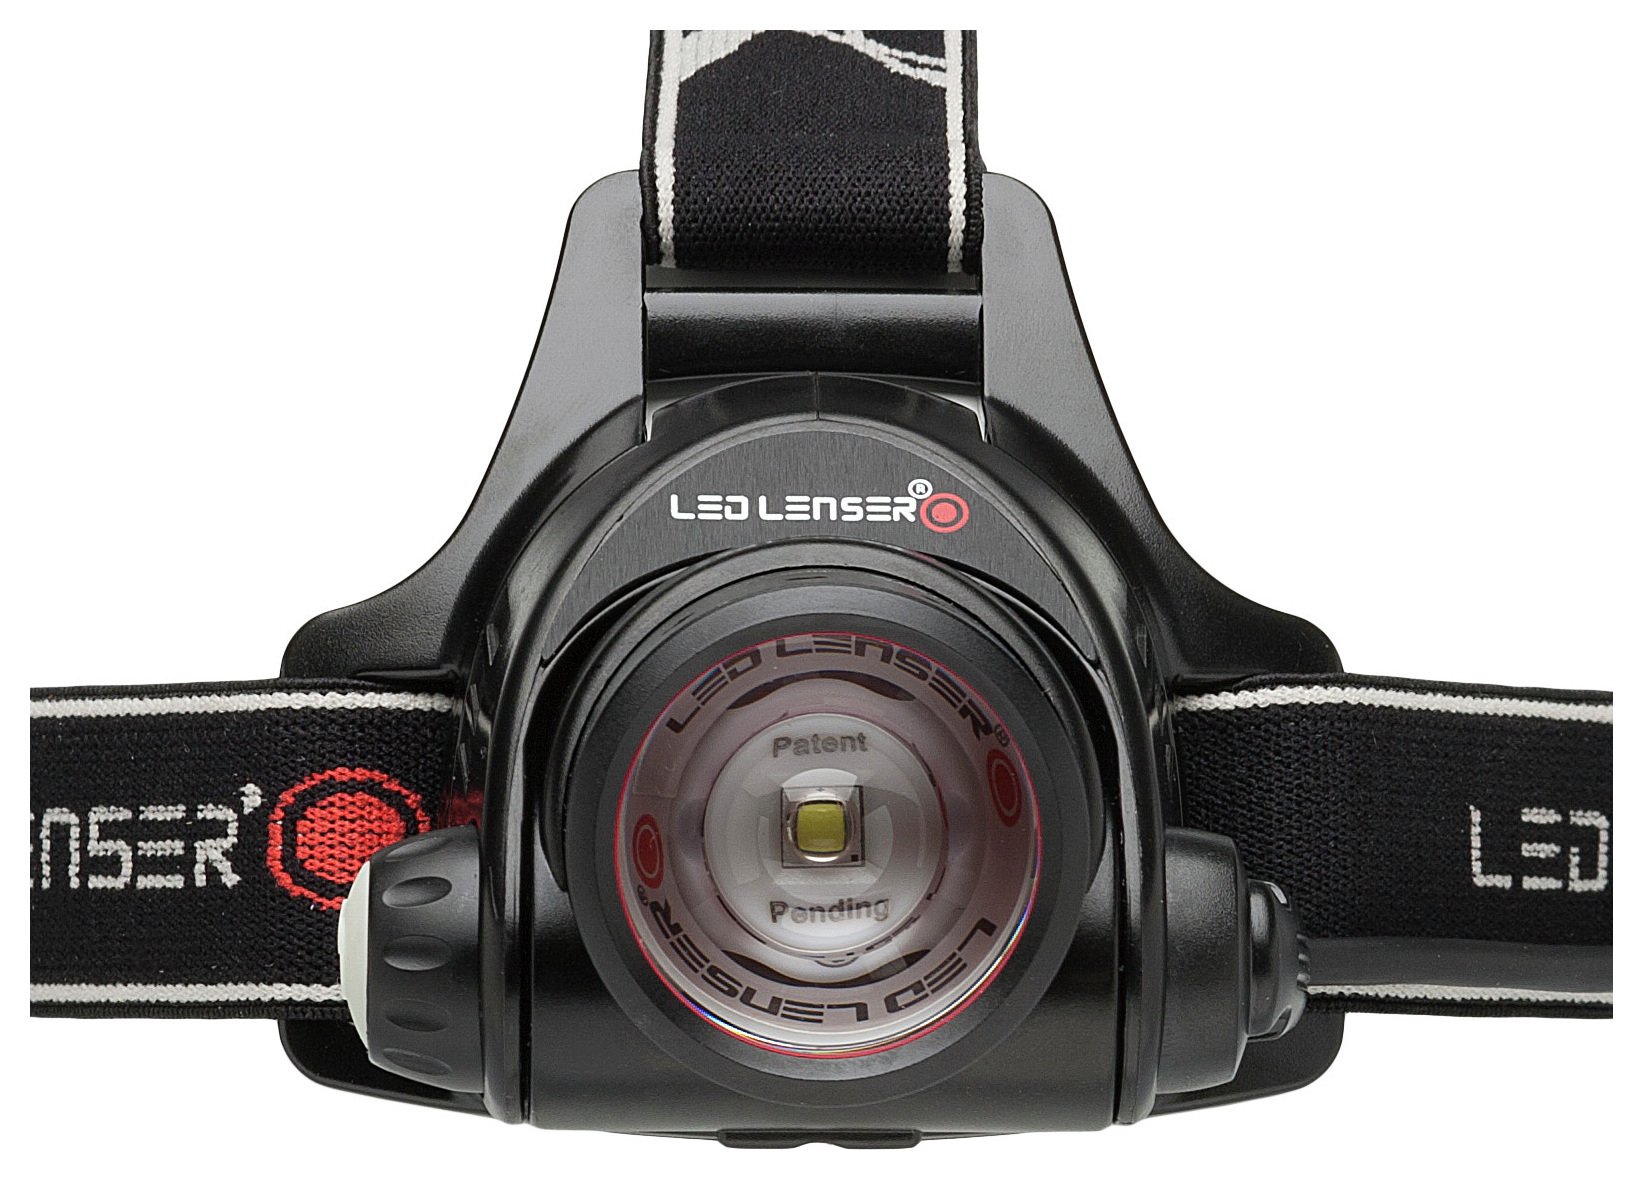 LED Lenser H14.2 Head Lamp. Review